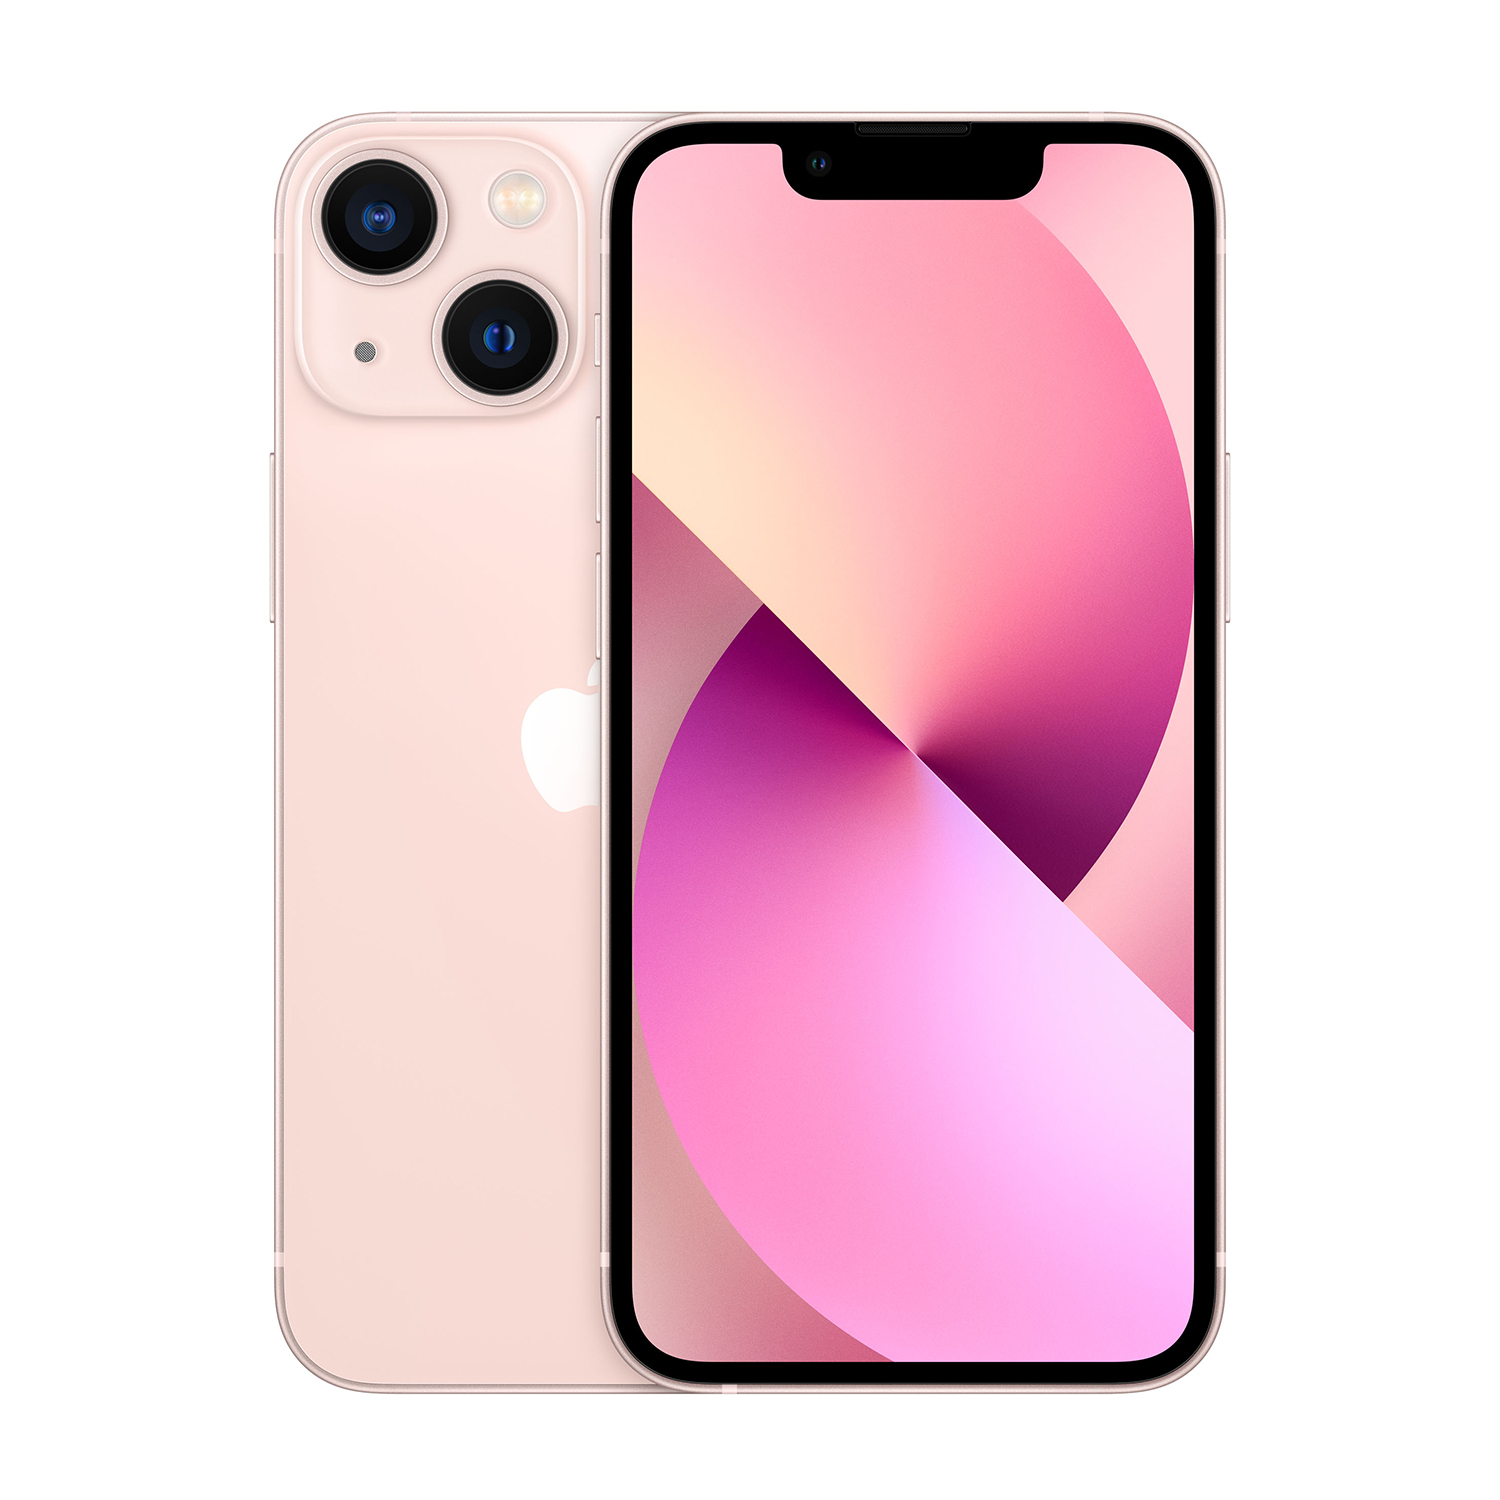 APPLE iPhone 13 mini 128GB Pink, 128 GB, PINK